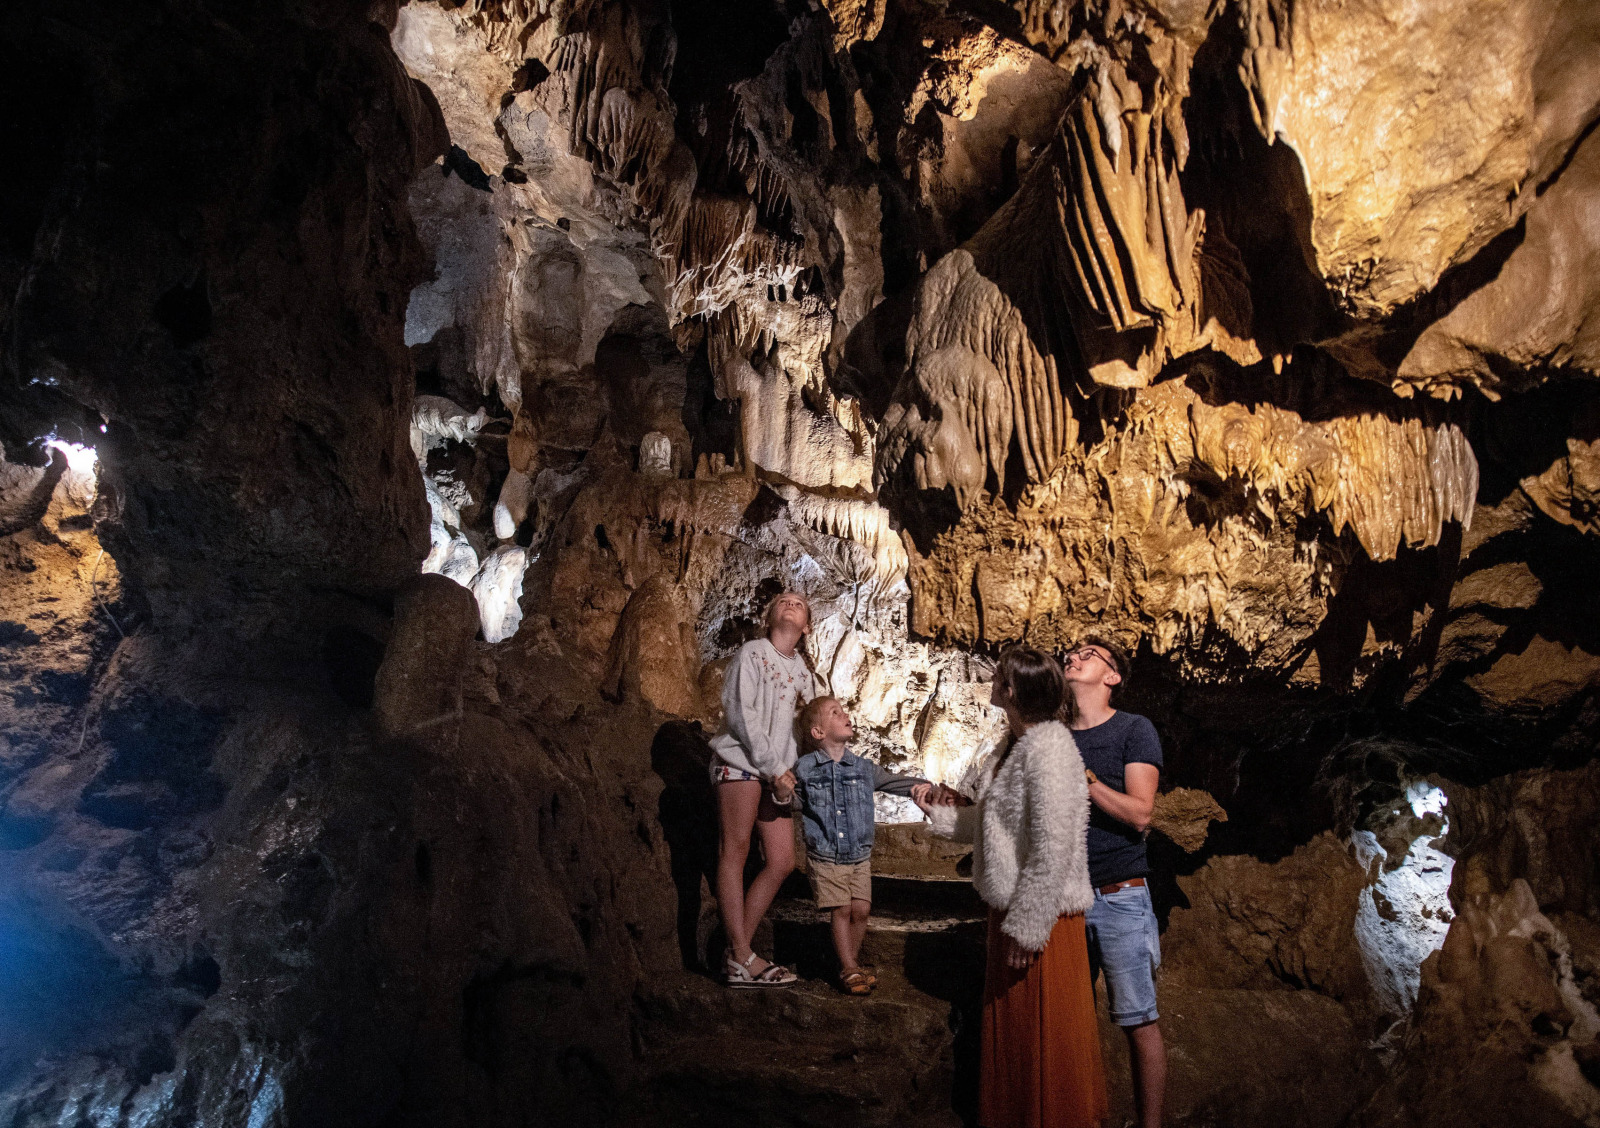 Familles à l'intérieur de la grotte observant les stalactites